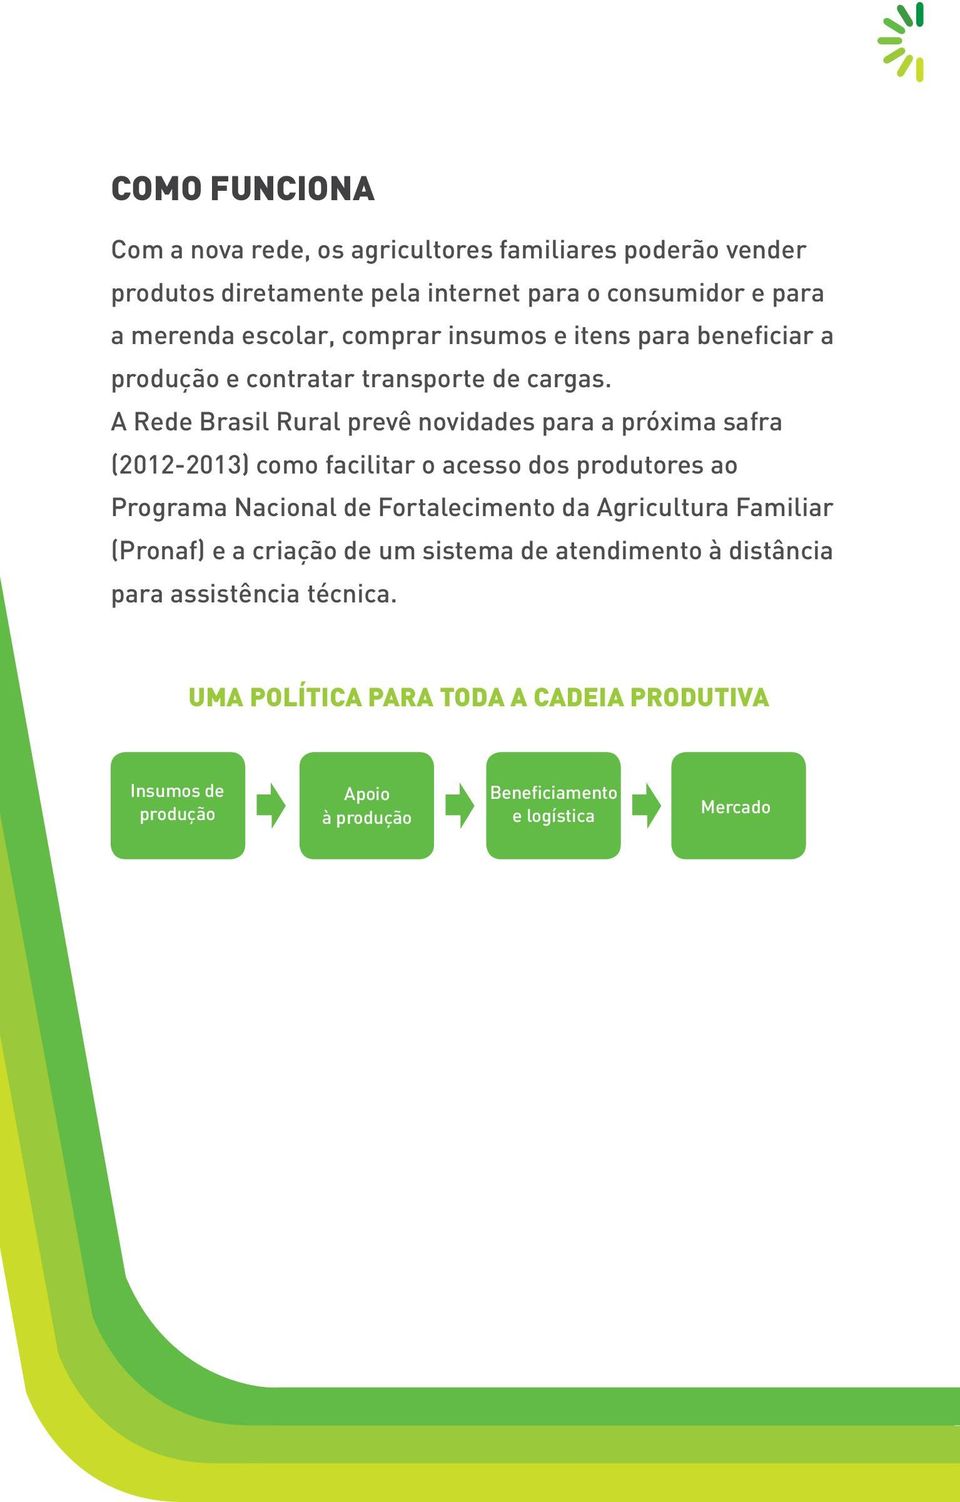 A Rede Brasil Rural prevê novidades para a próxima safra (2012-2013) como facilitar o acesso dos produtores ao Programa Nacional de Fortalecimento da